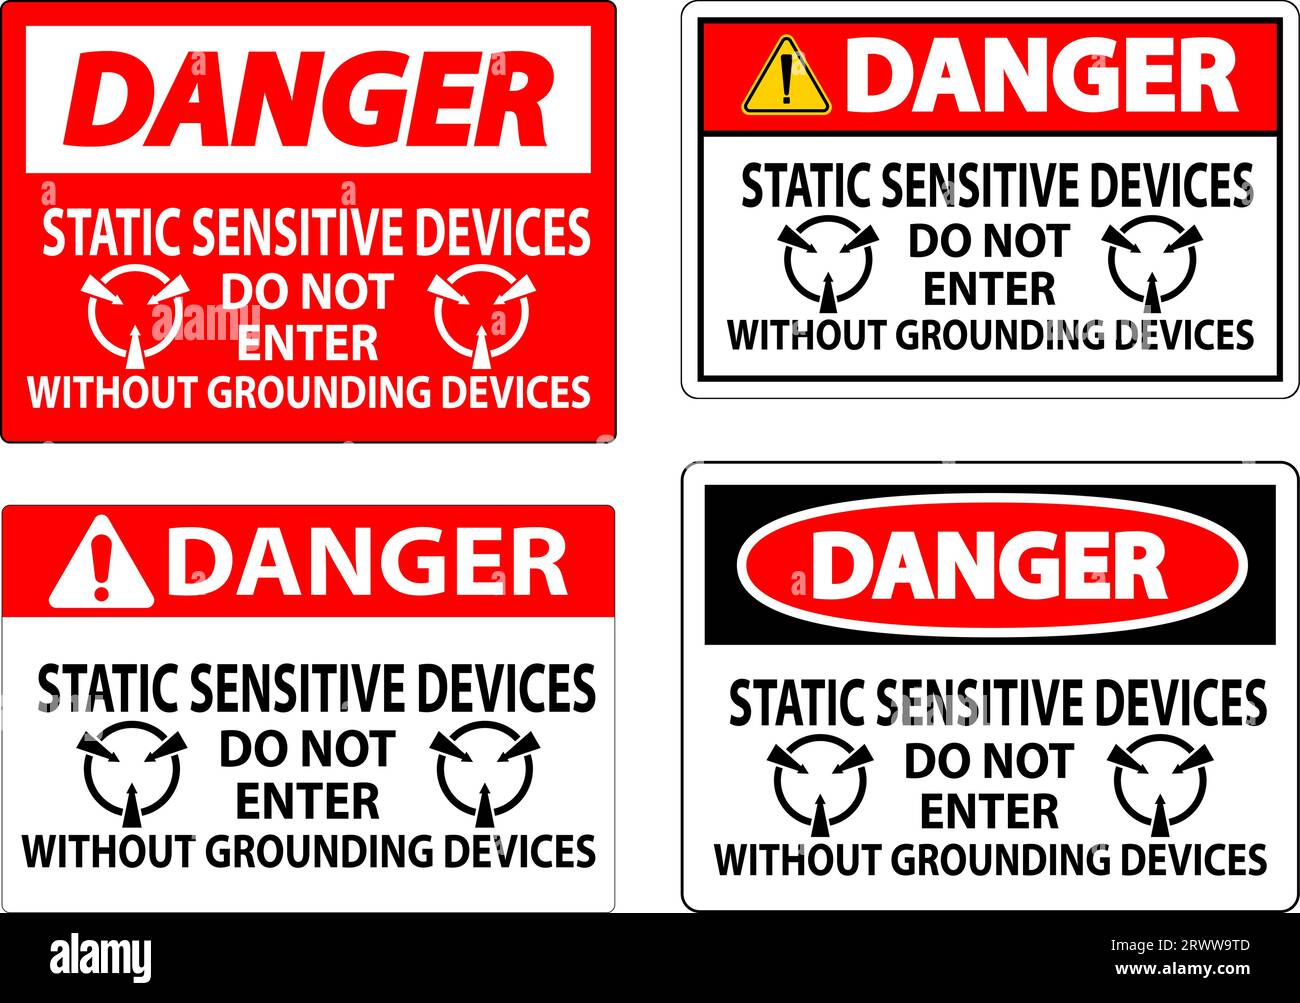 Signe de danger dispositifs sensibles à l'électricité statique ne pas entrer sans dispositifs de mise à la terre Illustration de Vecteur